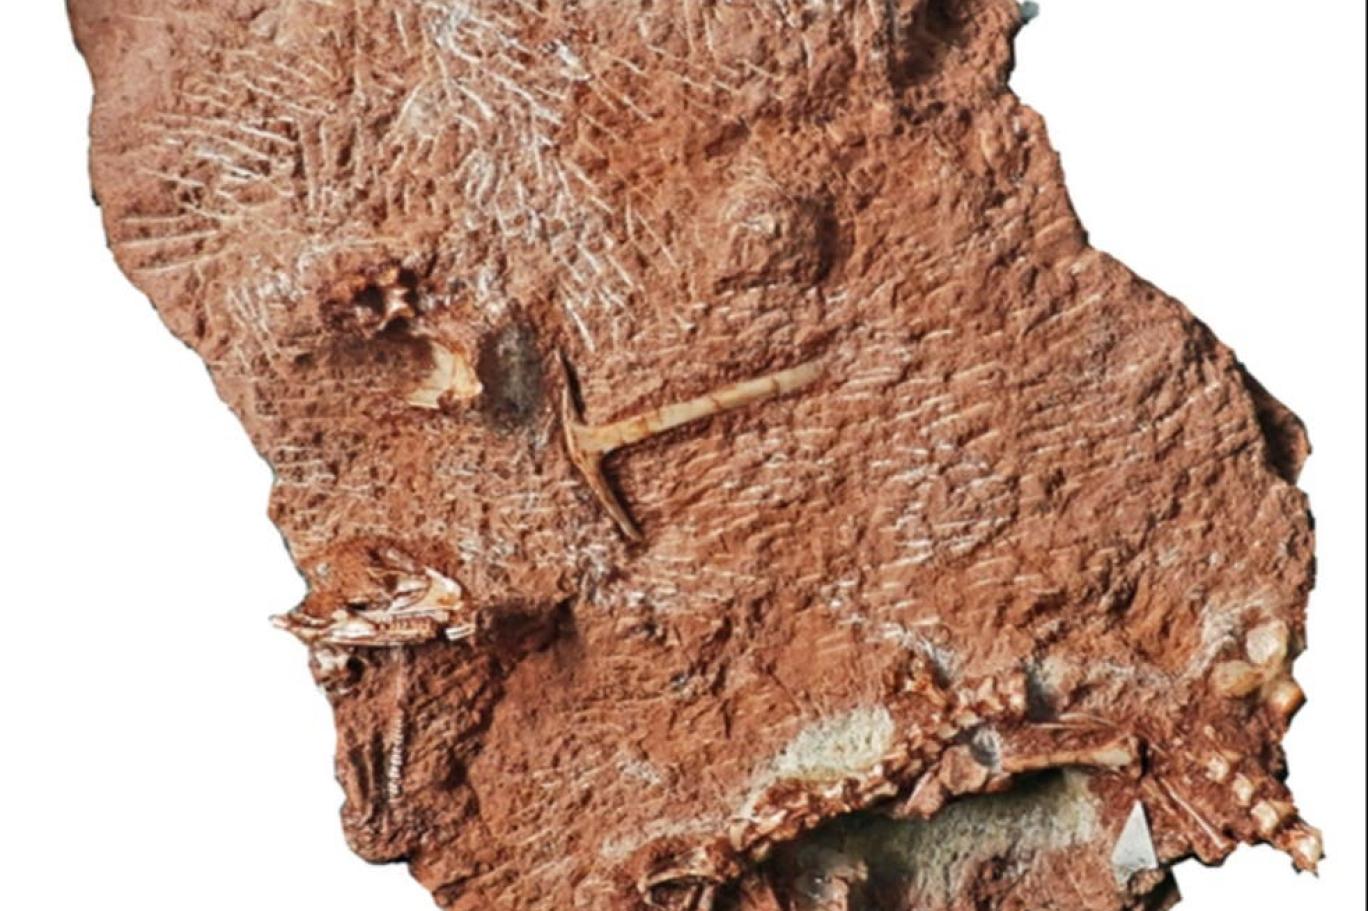 حفرية تكشف عن أن السحالي أقدم بملايين السنين مما نعتقد